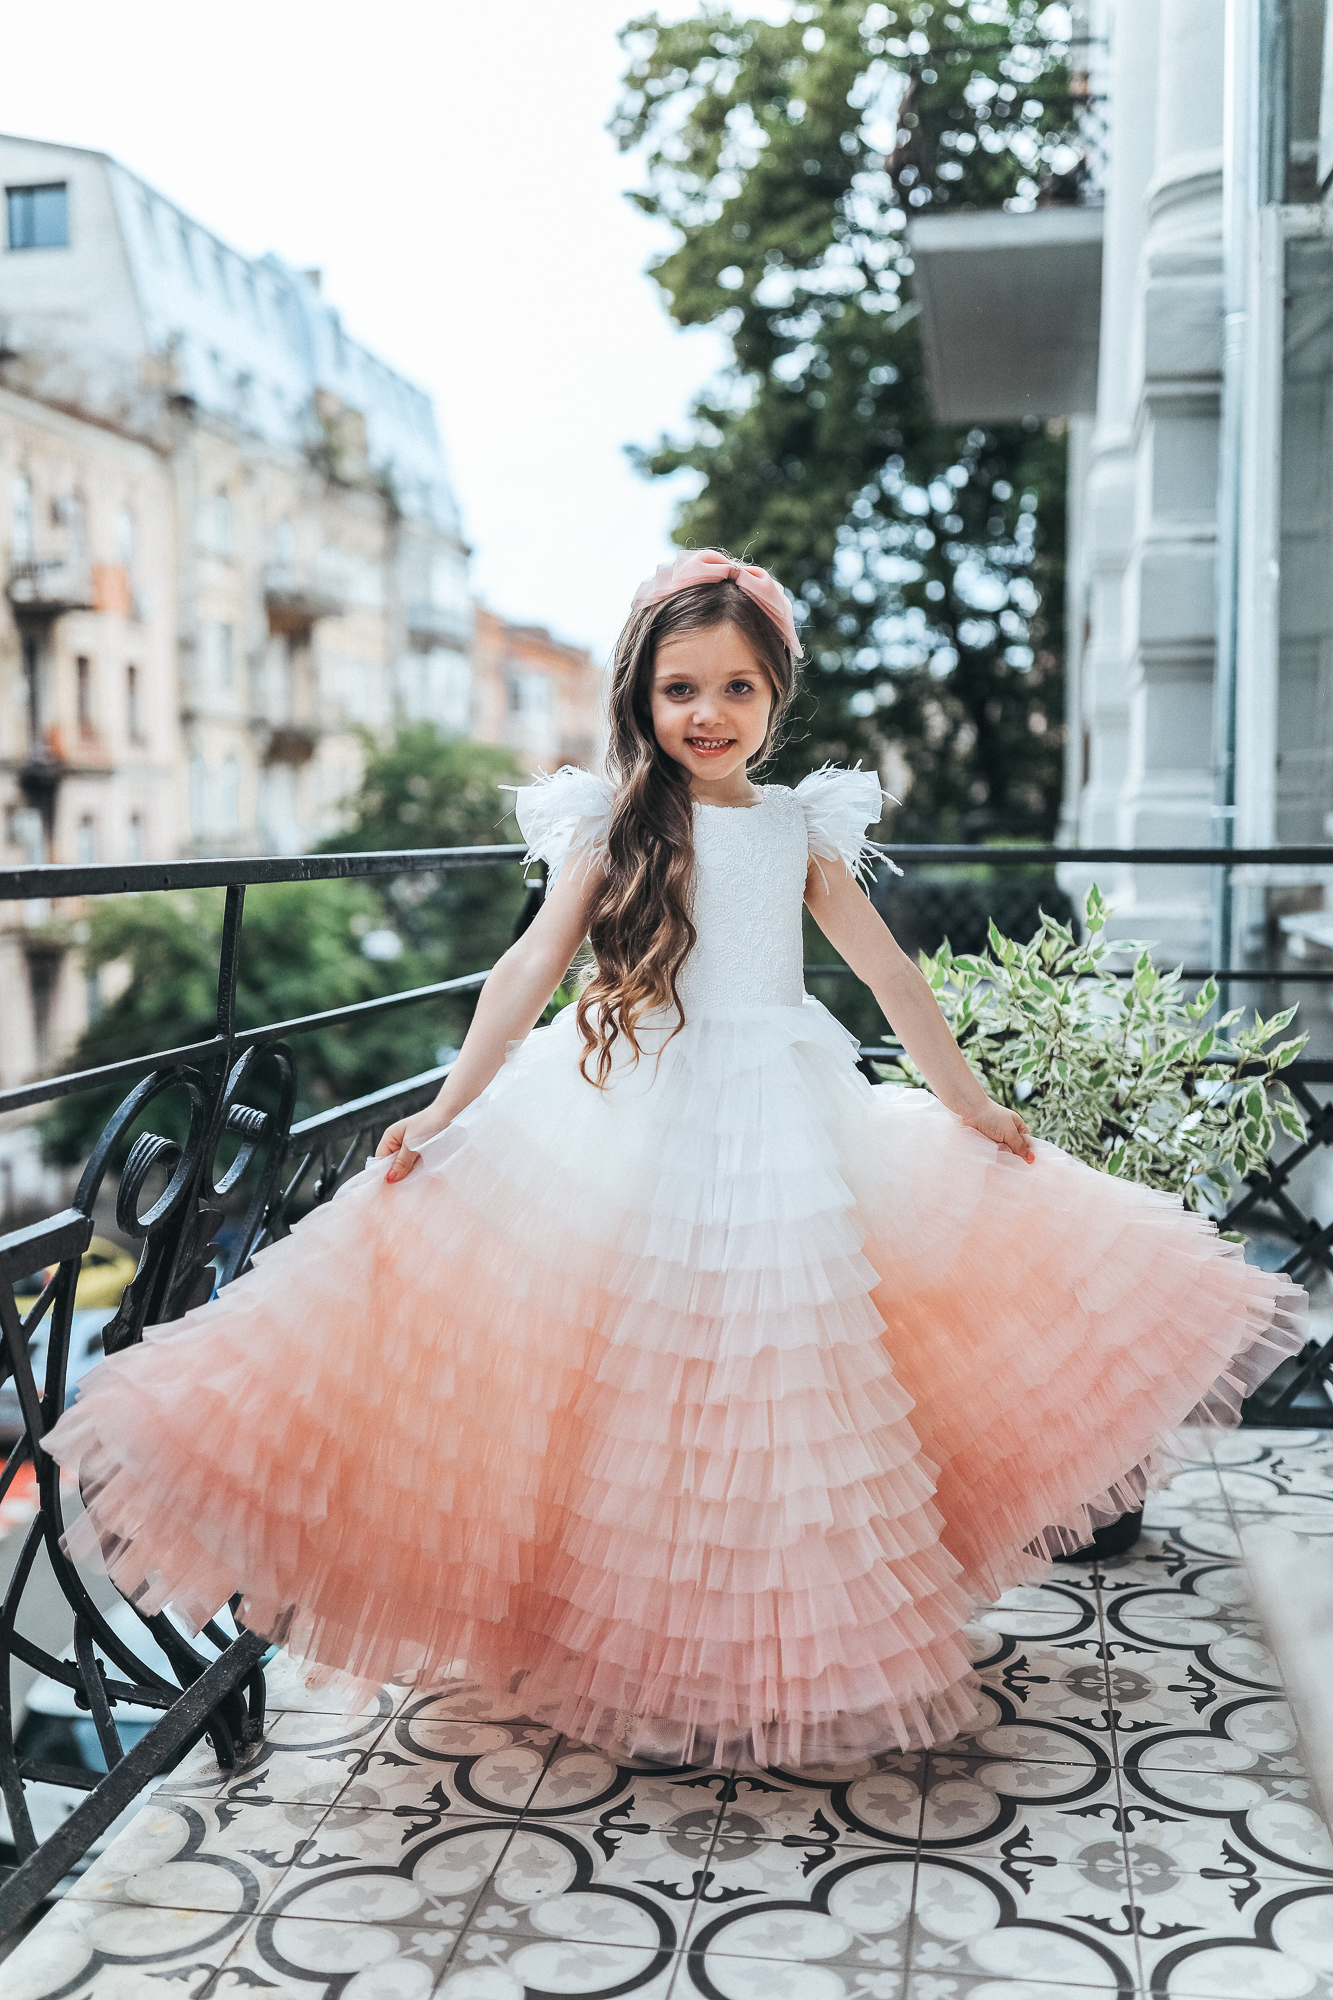 Платье на выпускной в детский сад купить Москва, выпускные платья для девочек в детском саду